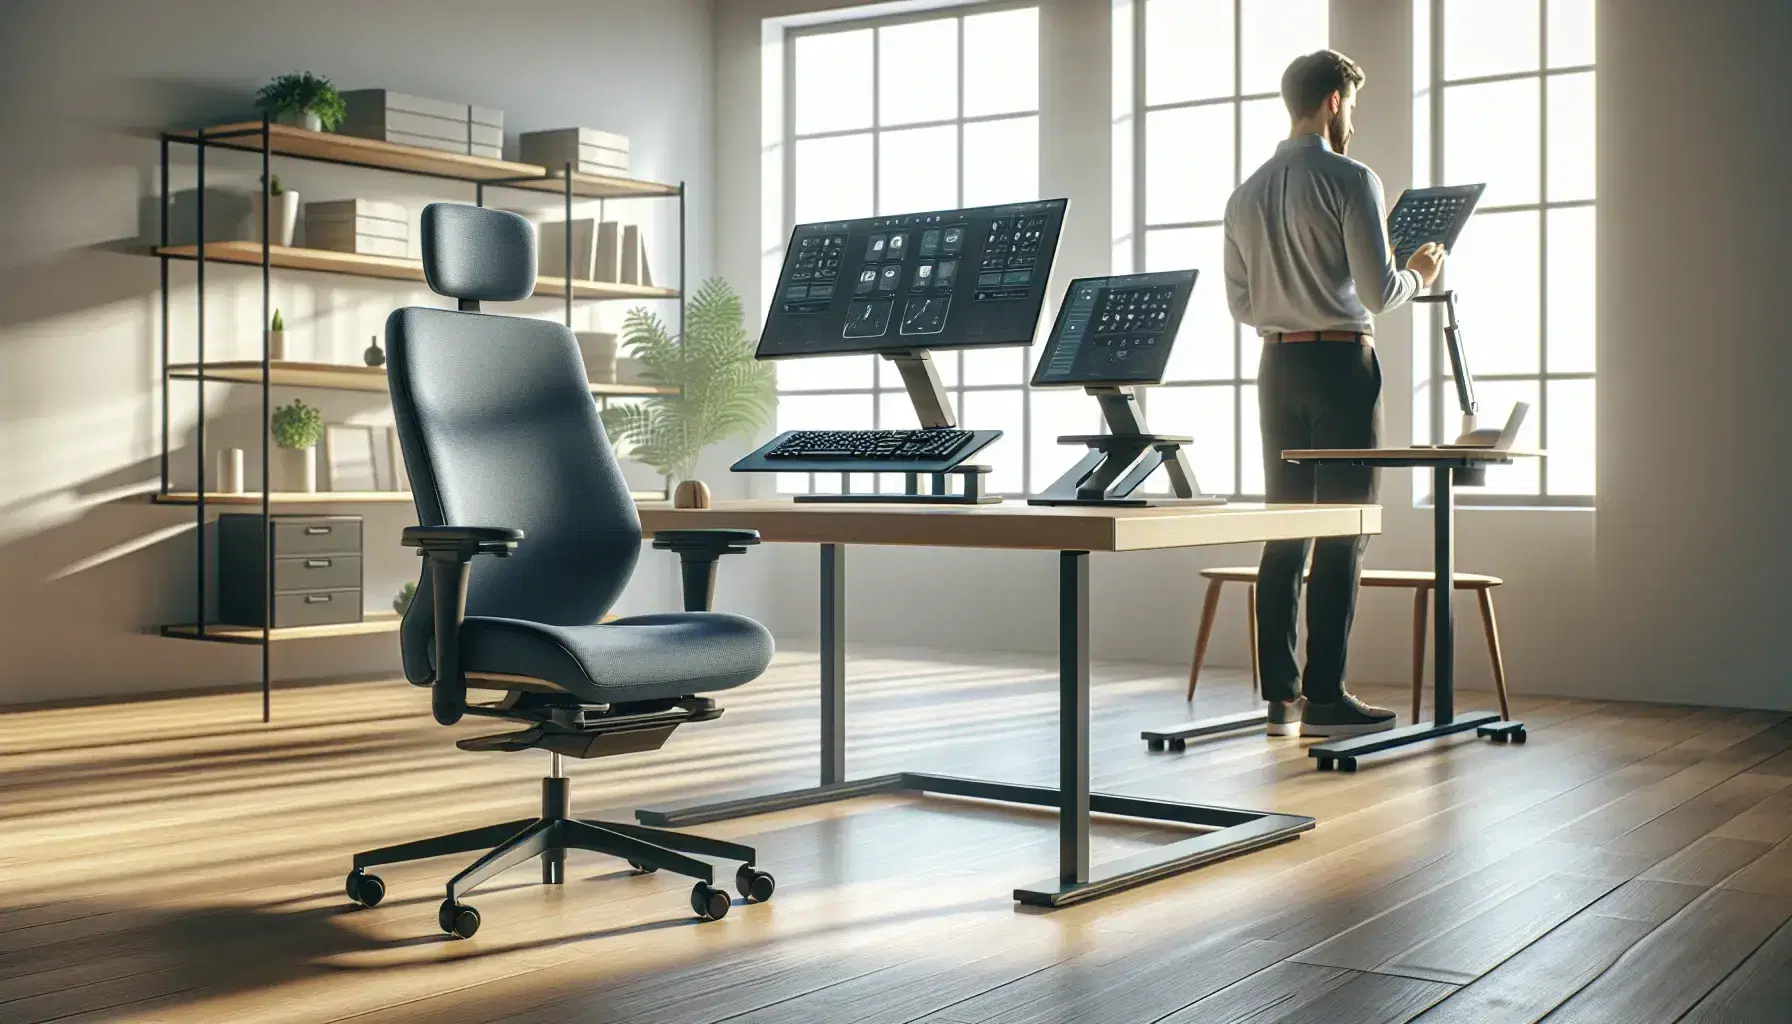 Oficina moderna y luminosa con silla ergonómica azul, escritorio de madera, monitor elevado, teclado y ratón ergonómico, y persona de pie en escritorio ajustable.